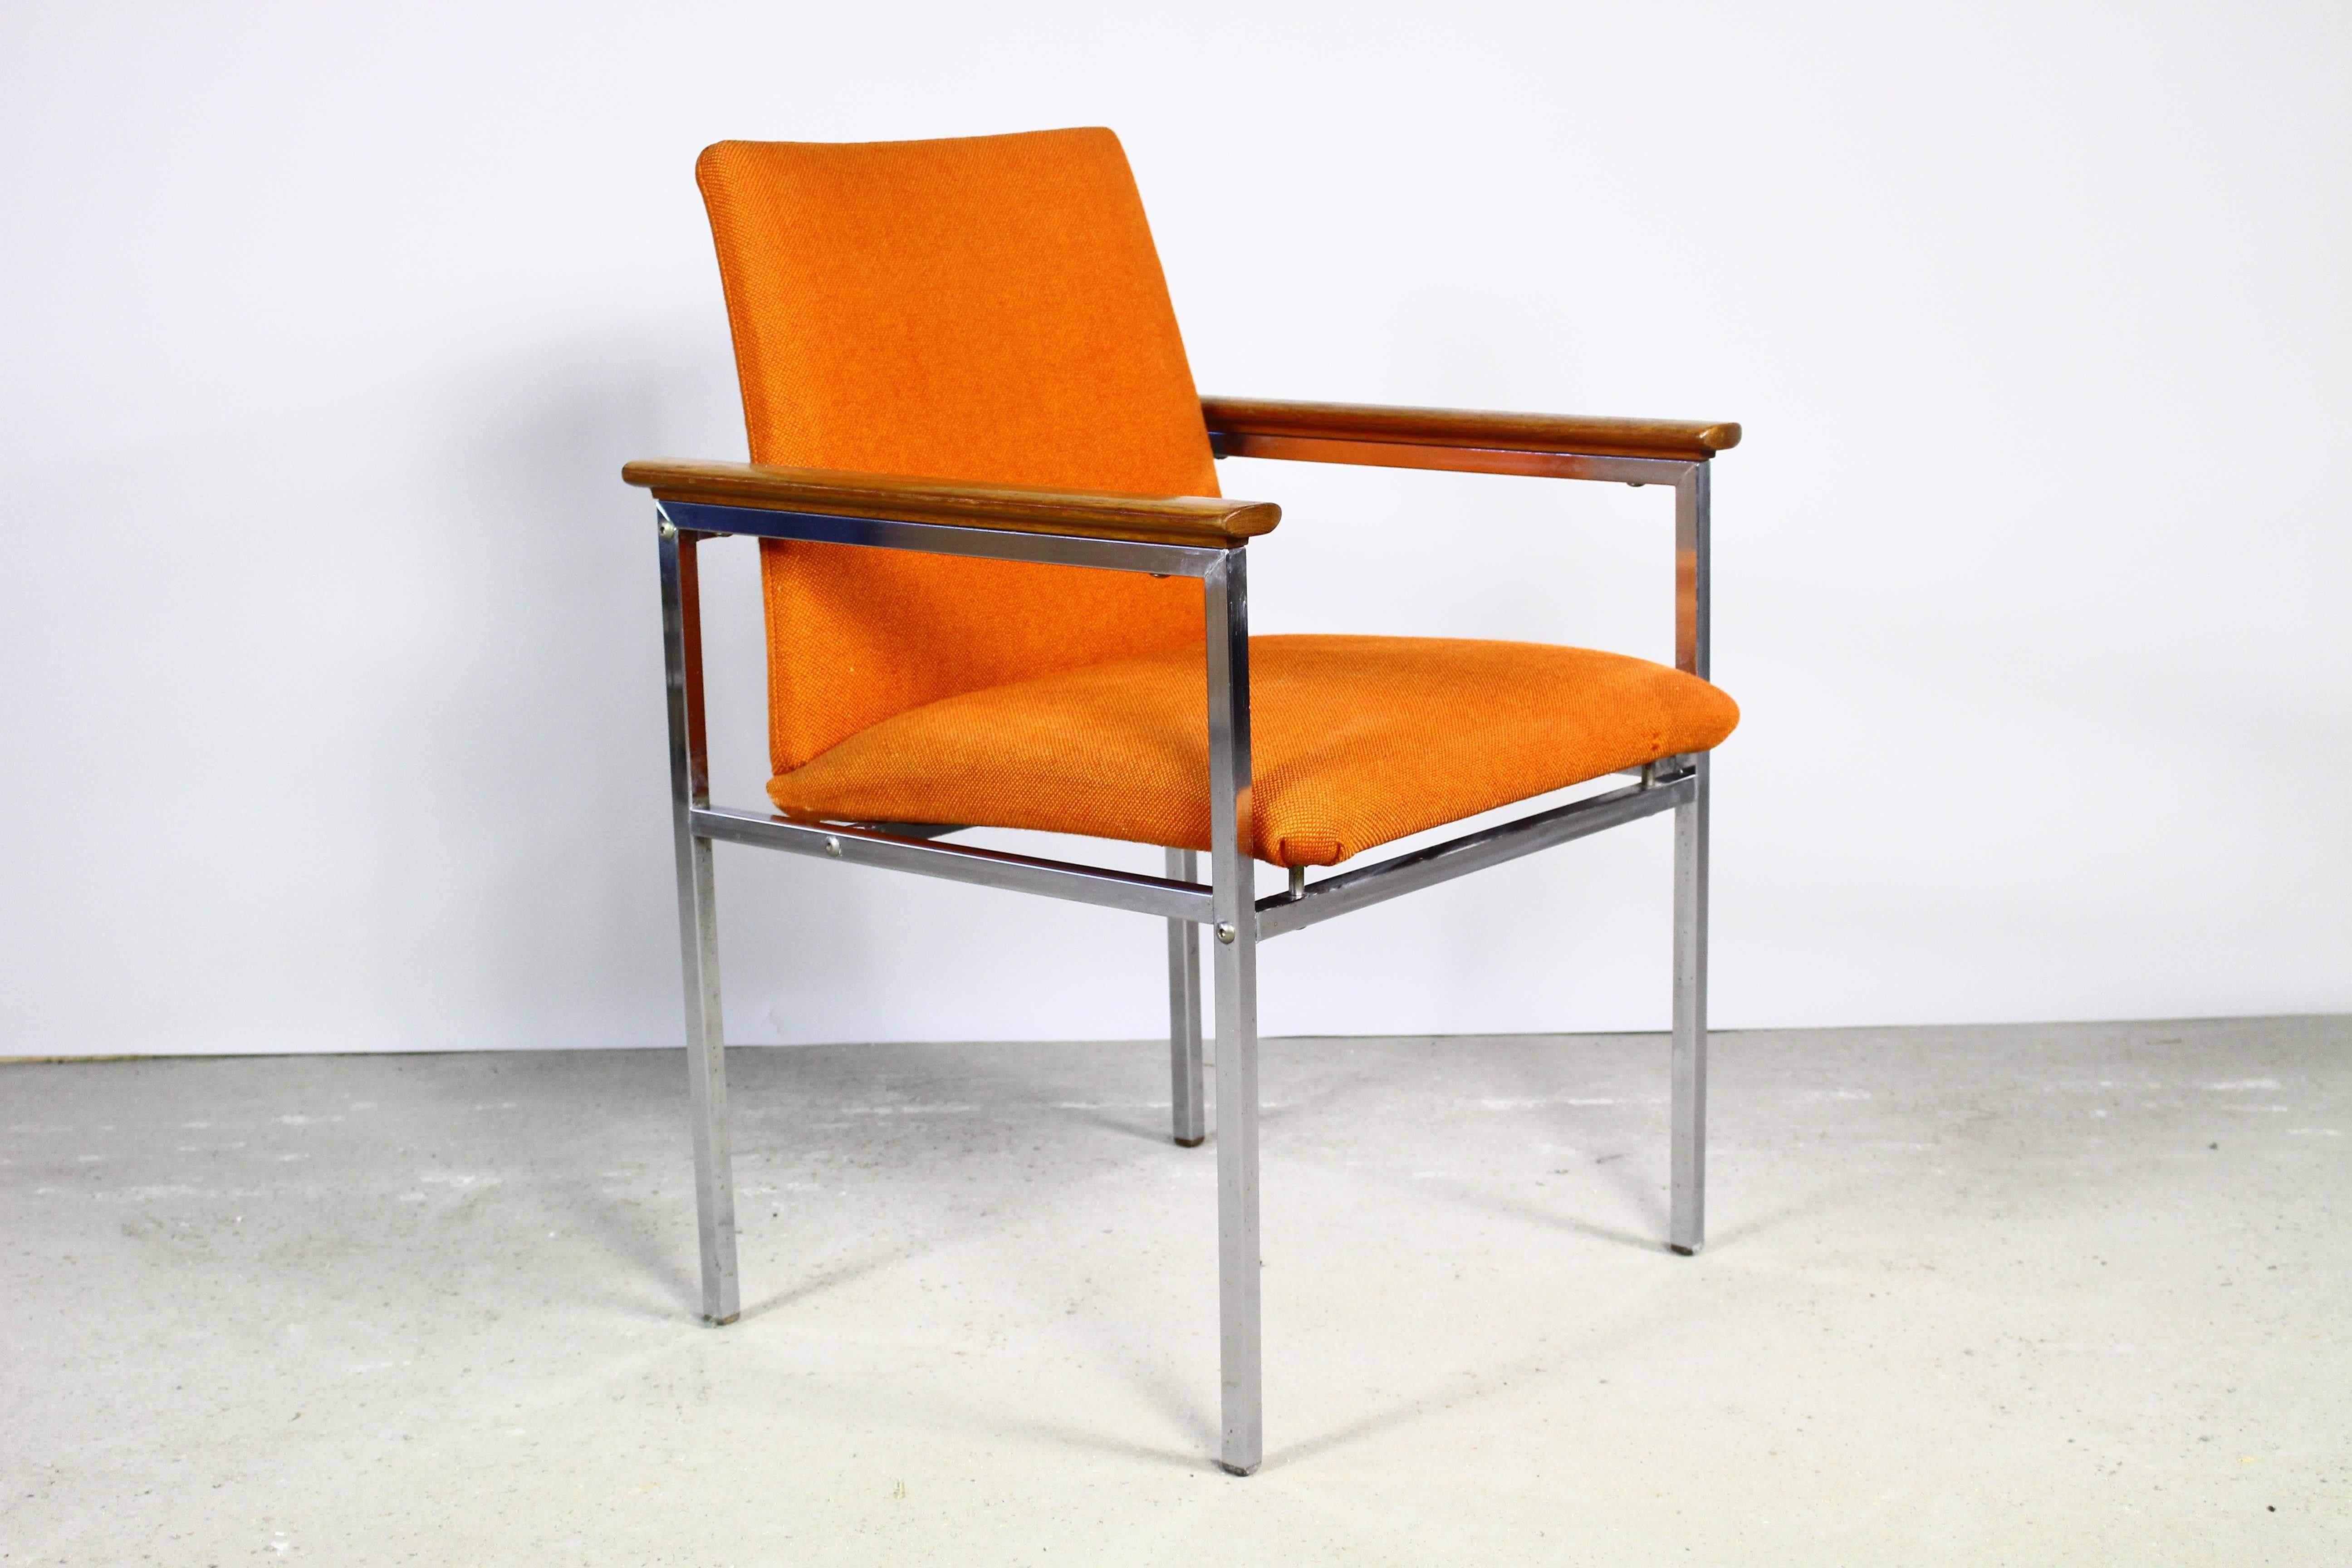 The Modern Scandinavian Mid-Century Modern Sessel. 
Entworfen vom renommierten schwedischen Designer Sigvard Bernadotte und produziert vom dänischen Hersteller France & Son.
Ein verchromtes Stahlgestell mit Armlehnen aus Holz.
Der Sessel wird für